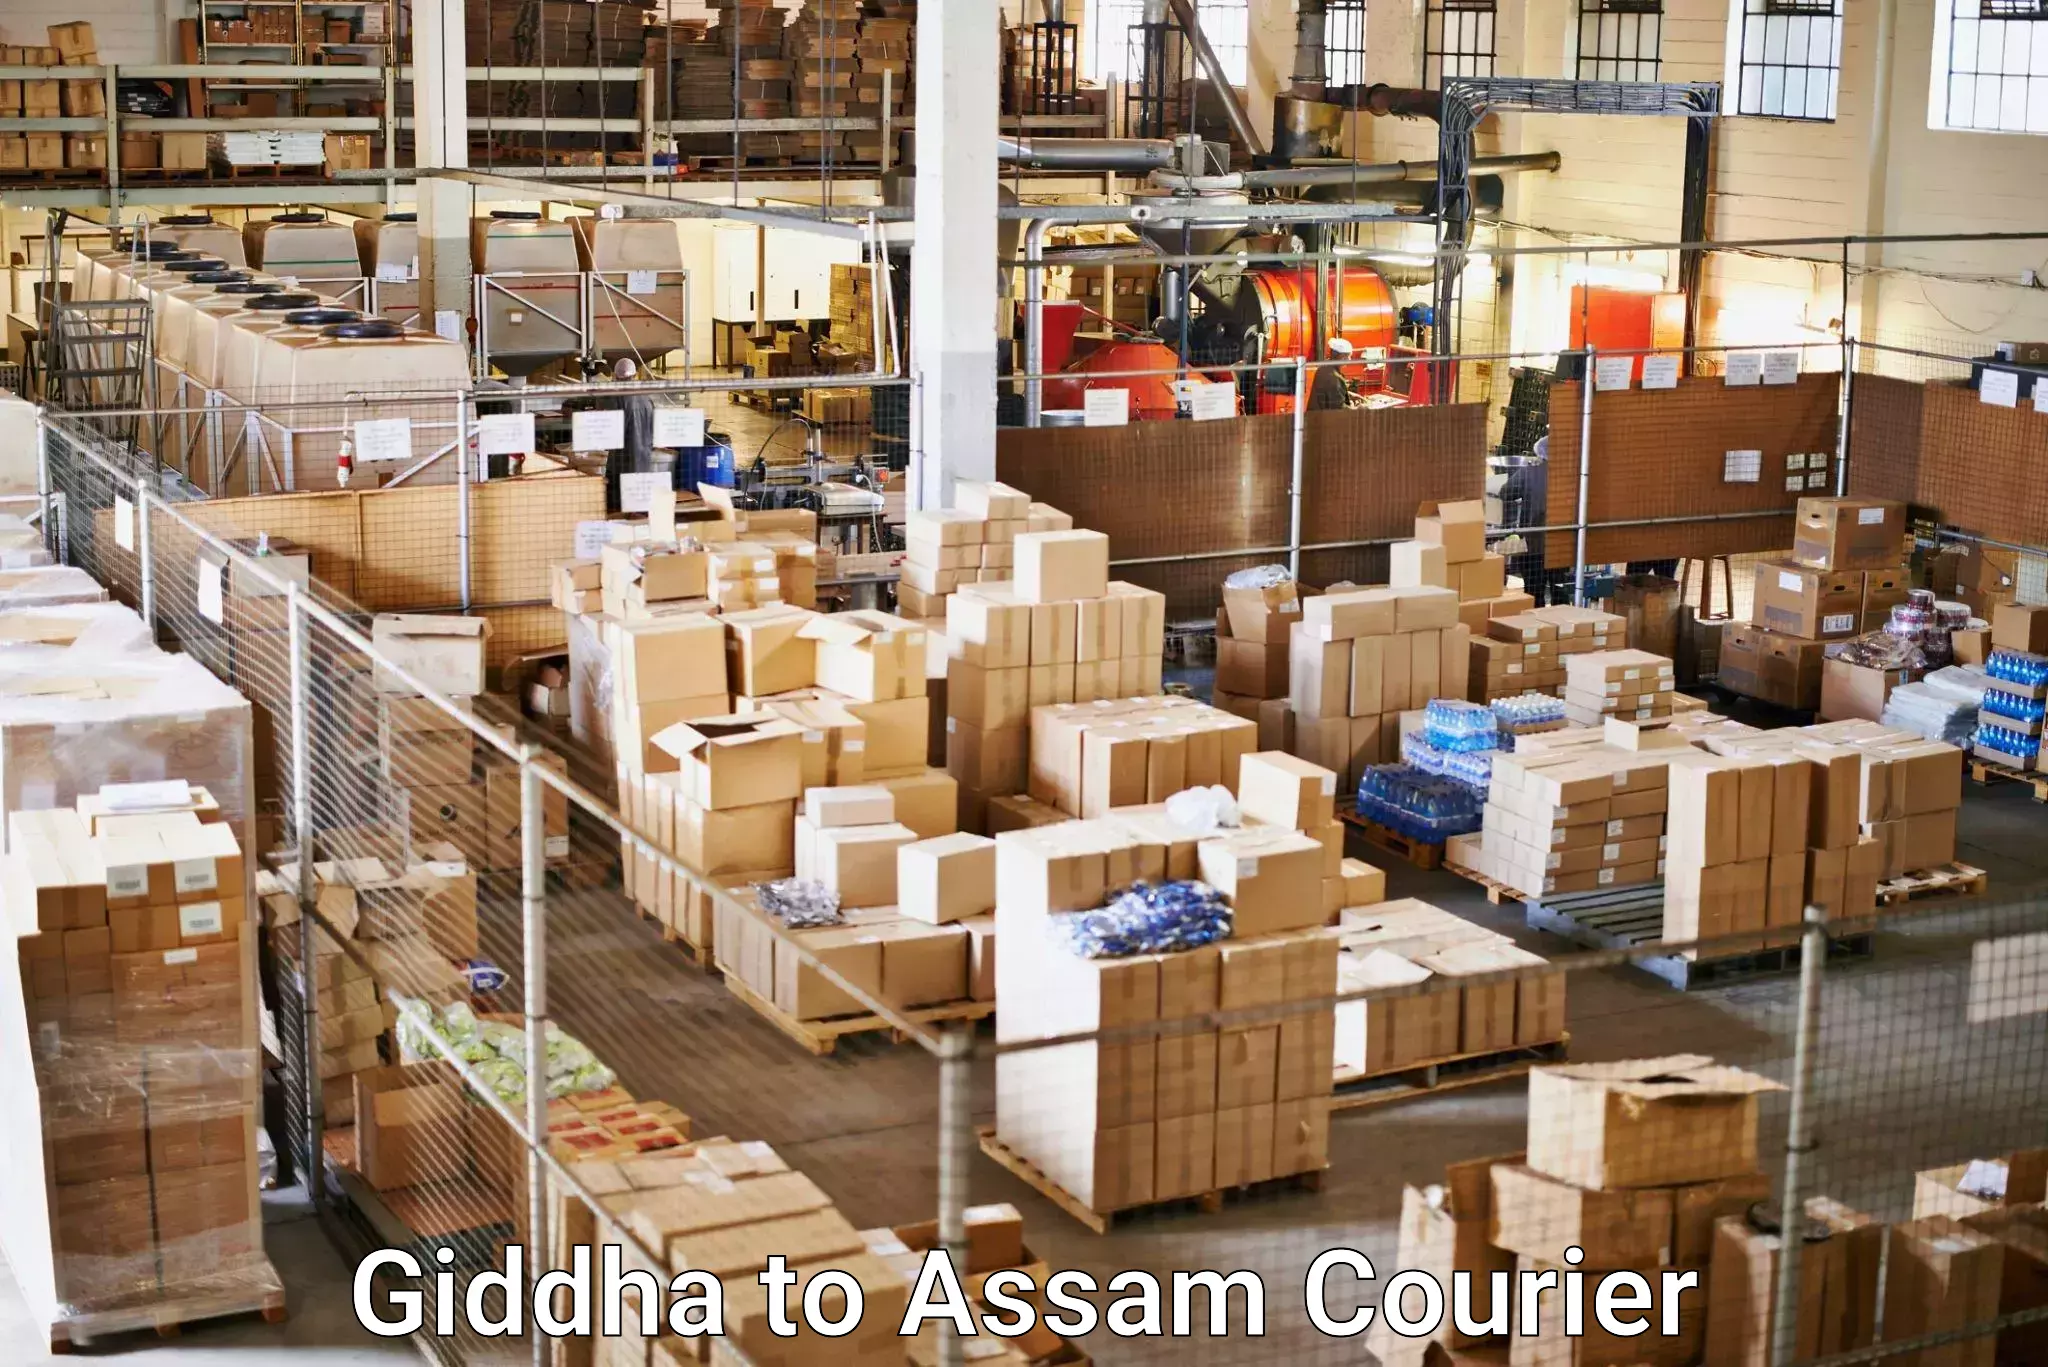 Courier insurance Giddha to Dehurda